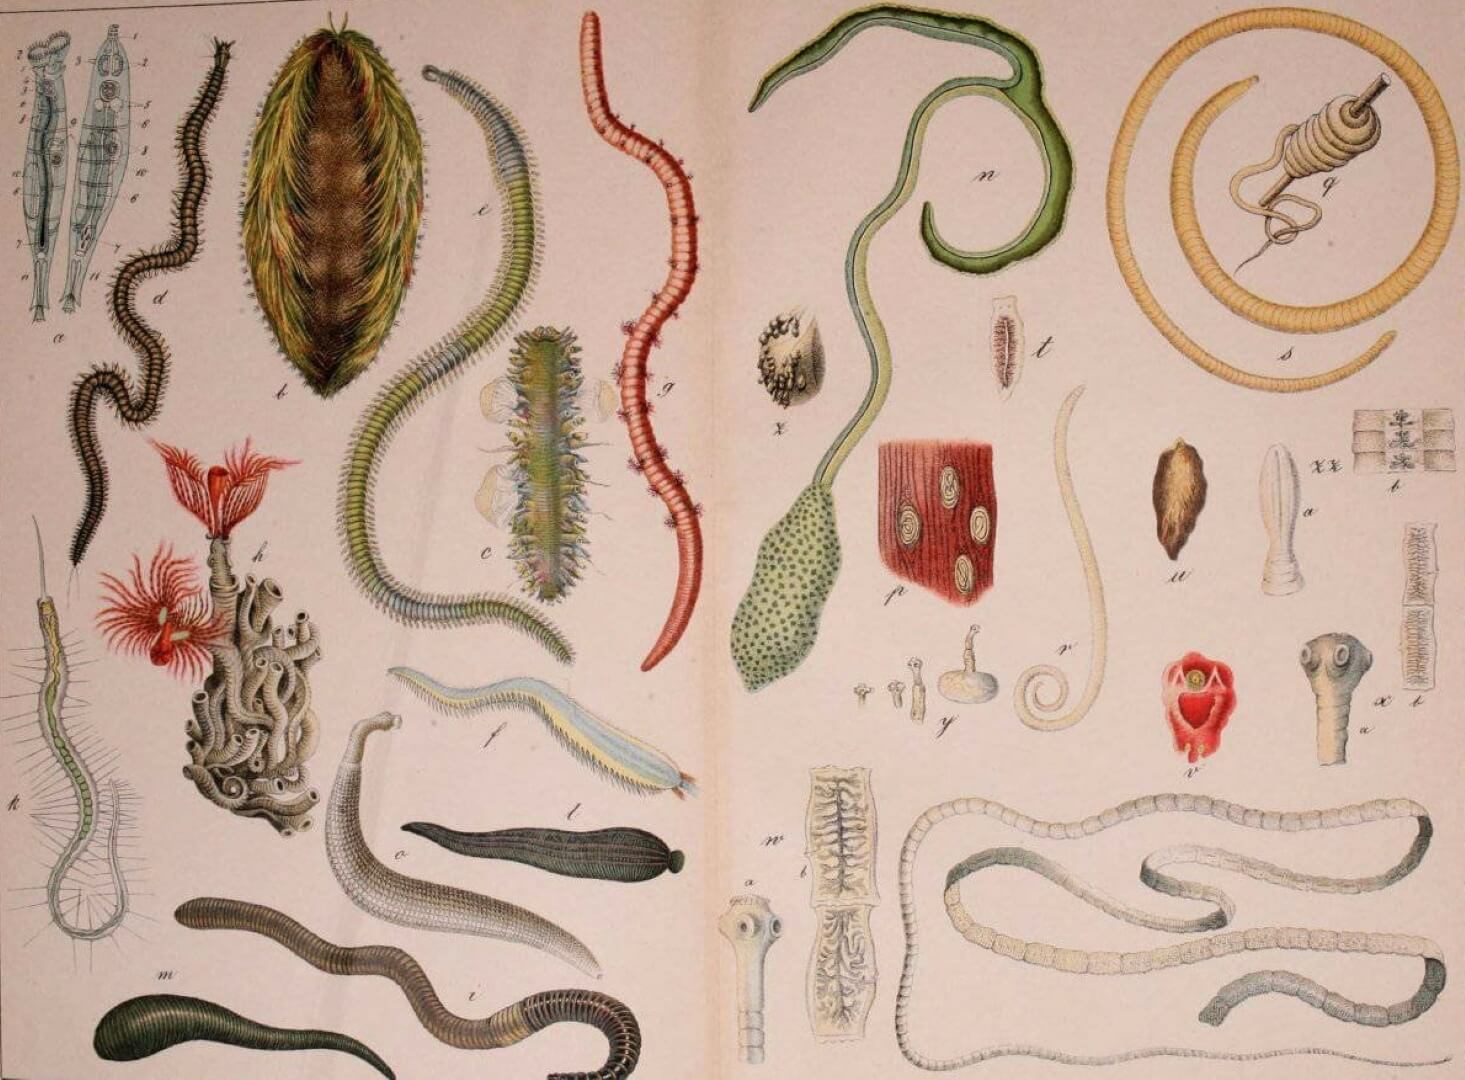 Заражение паразитическими червями. В древние времена паразиты были гораздо опаснее, чем сегодня. Фото.